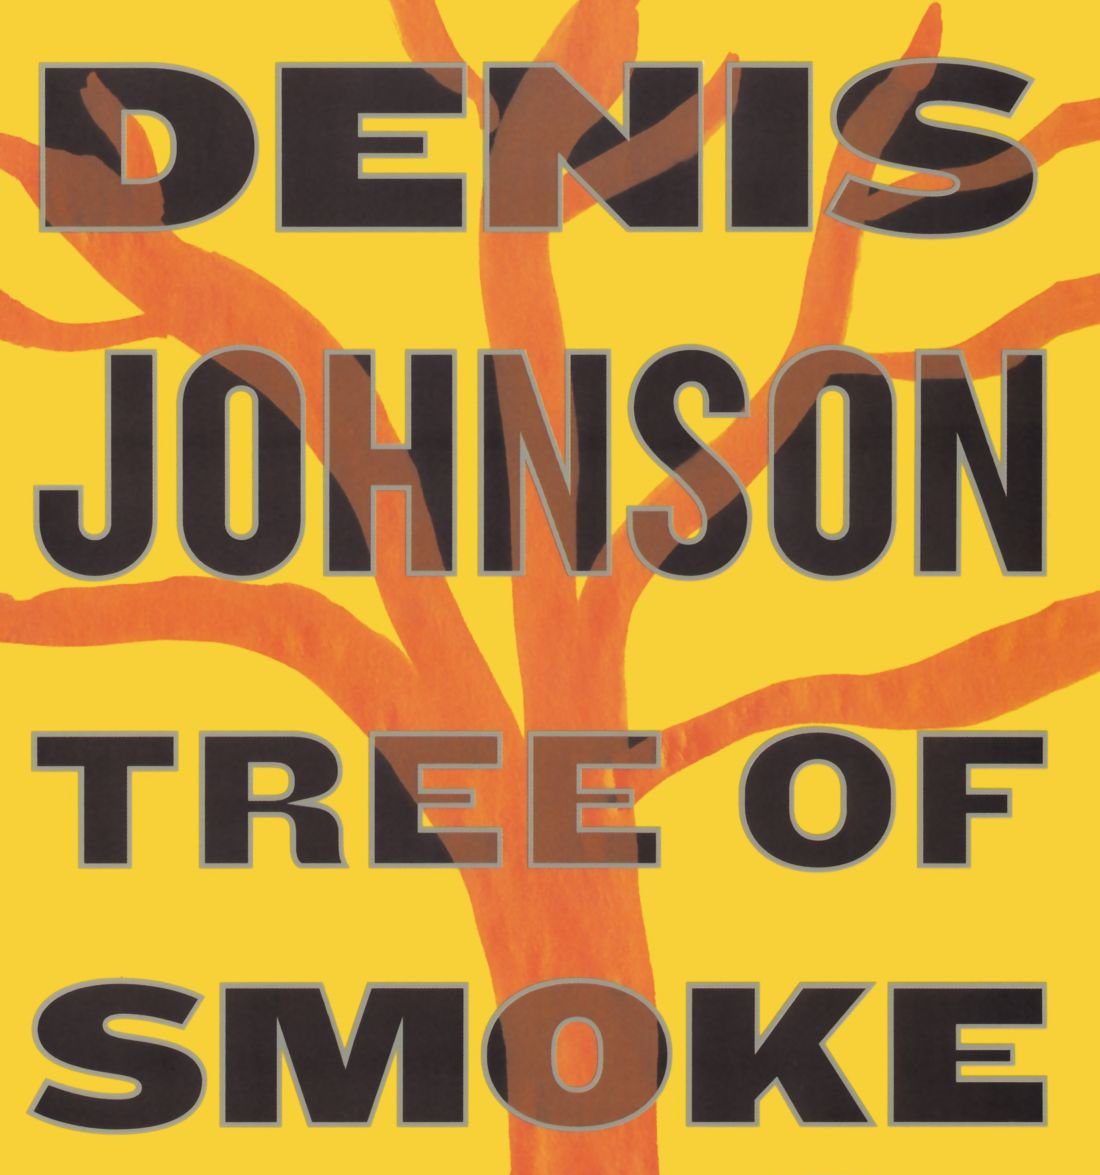 Tree of Smoke by Denis Johnson